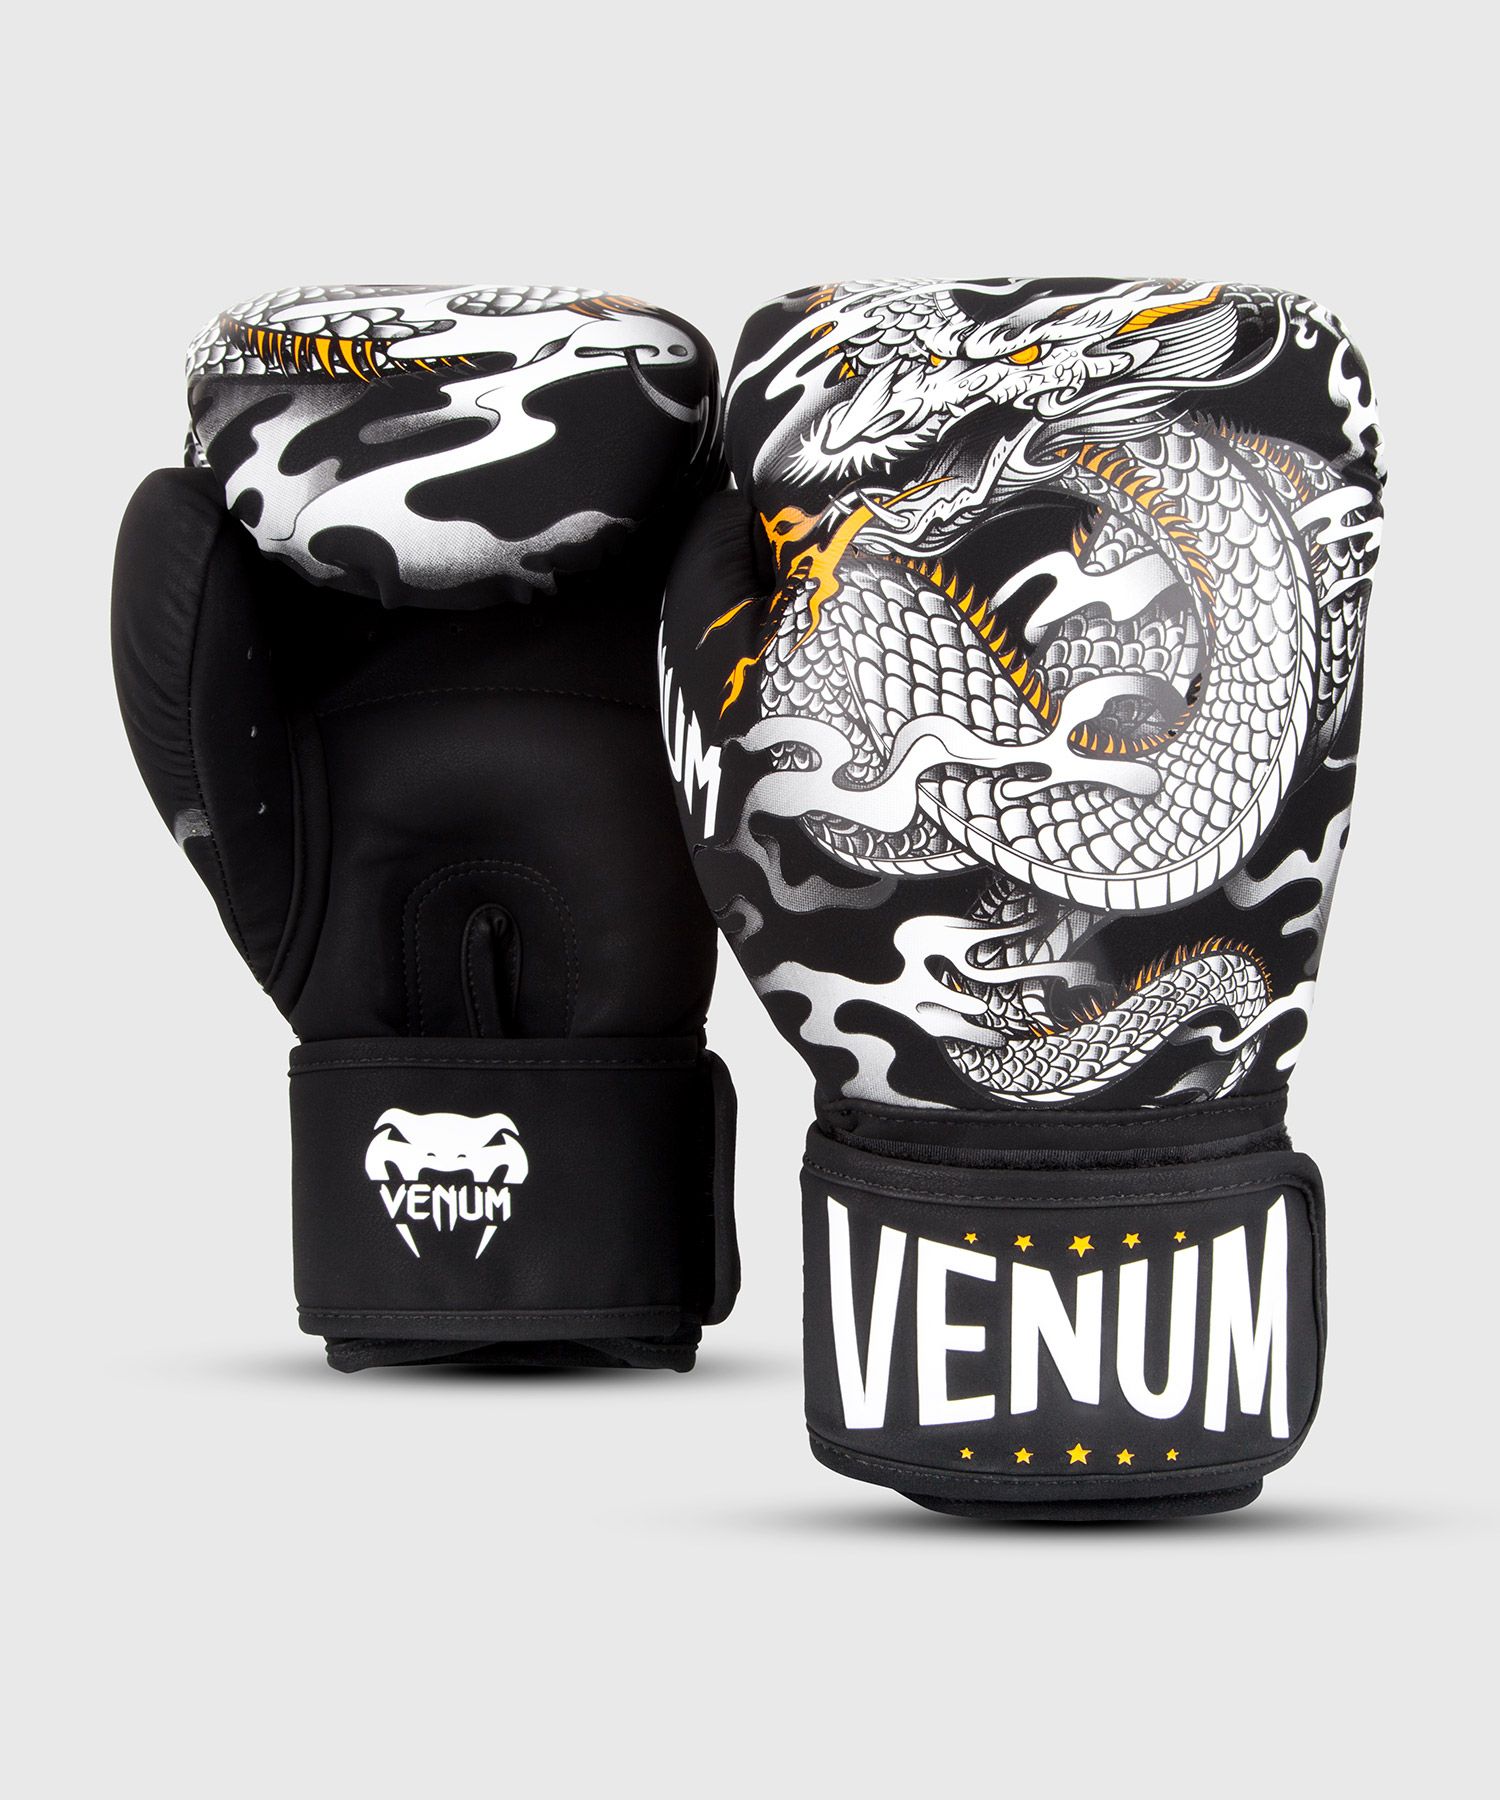 Venum Dragon's Flightボクシング グローブ - ブラック/ホワイト